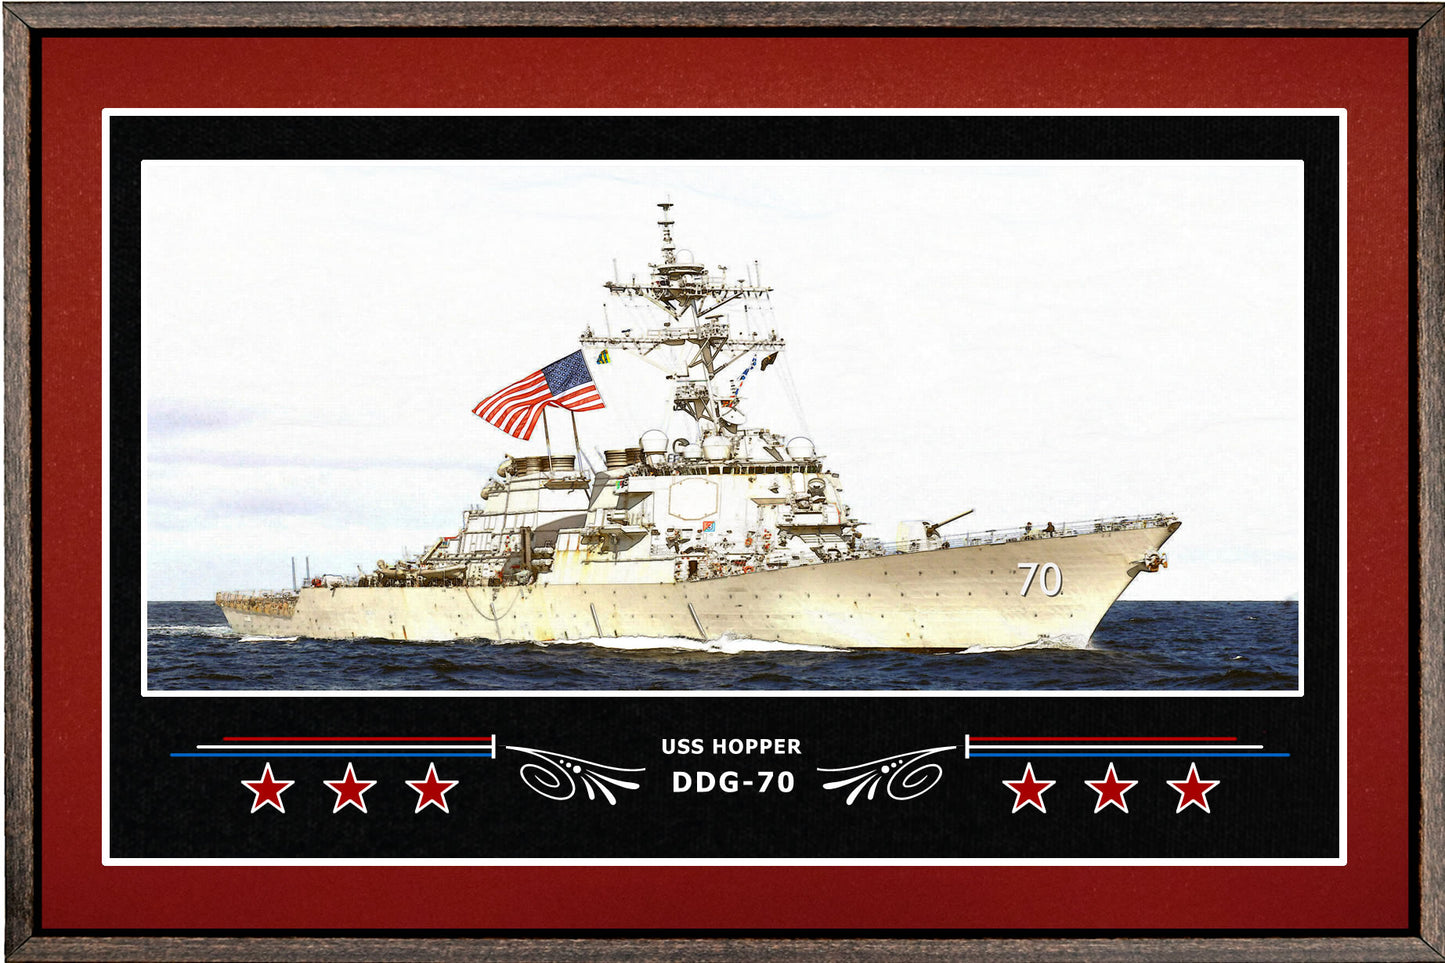 USS HOPPER DDG 70 BOX FRAMED CANVAS ART BURGUNDY